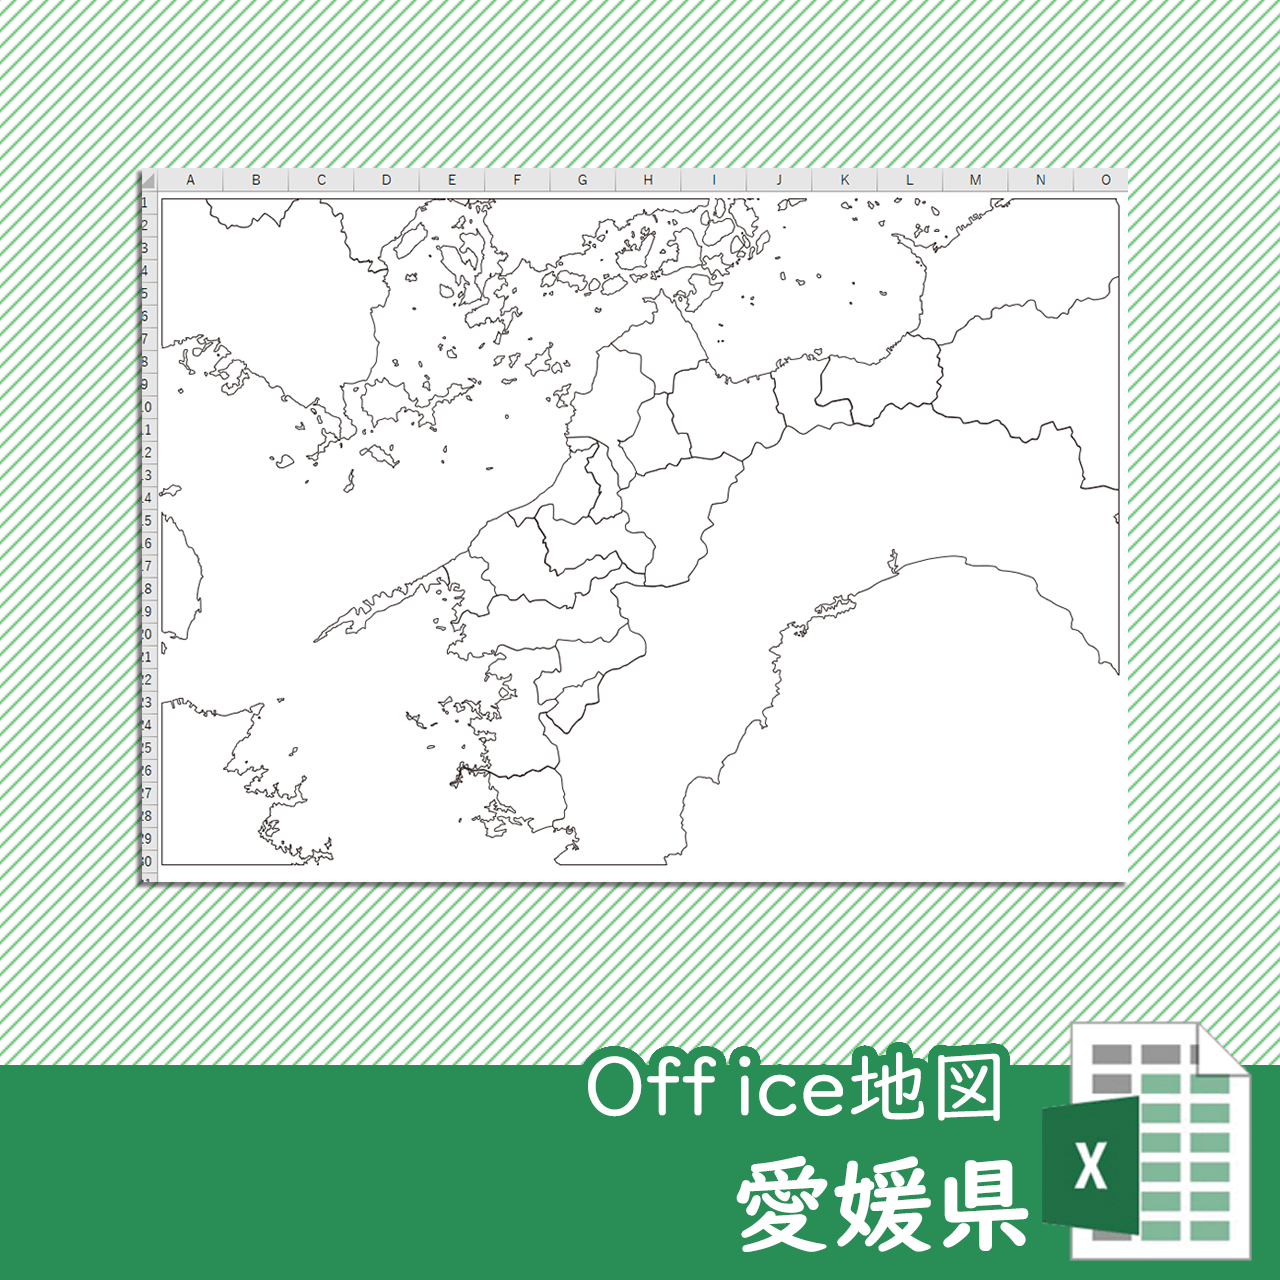 愛媛県のOffice地図のサムネイル